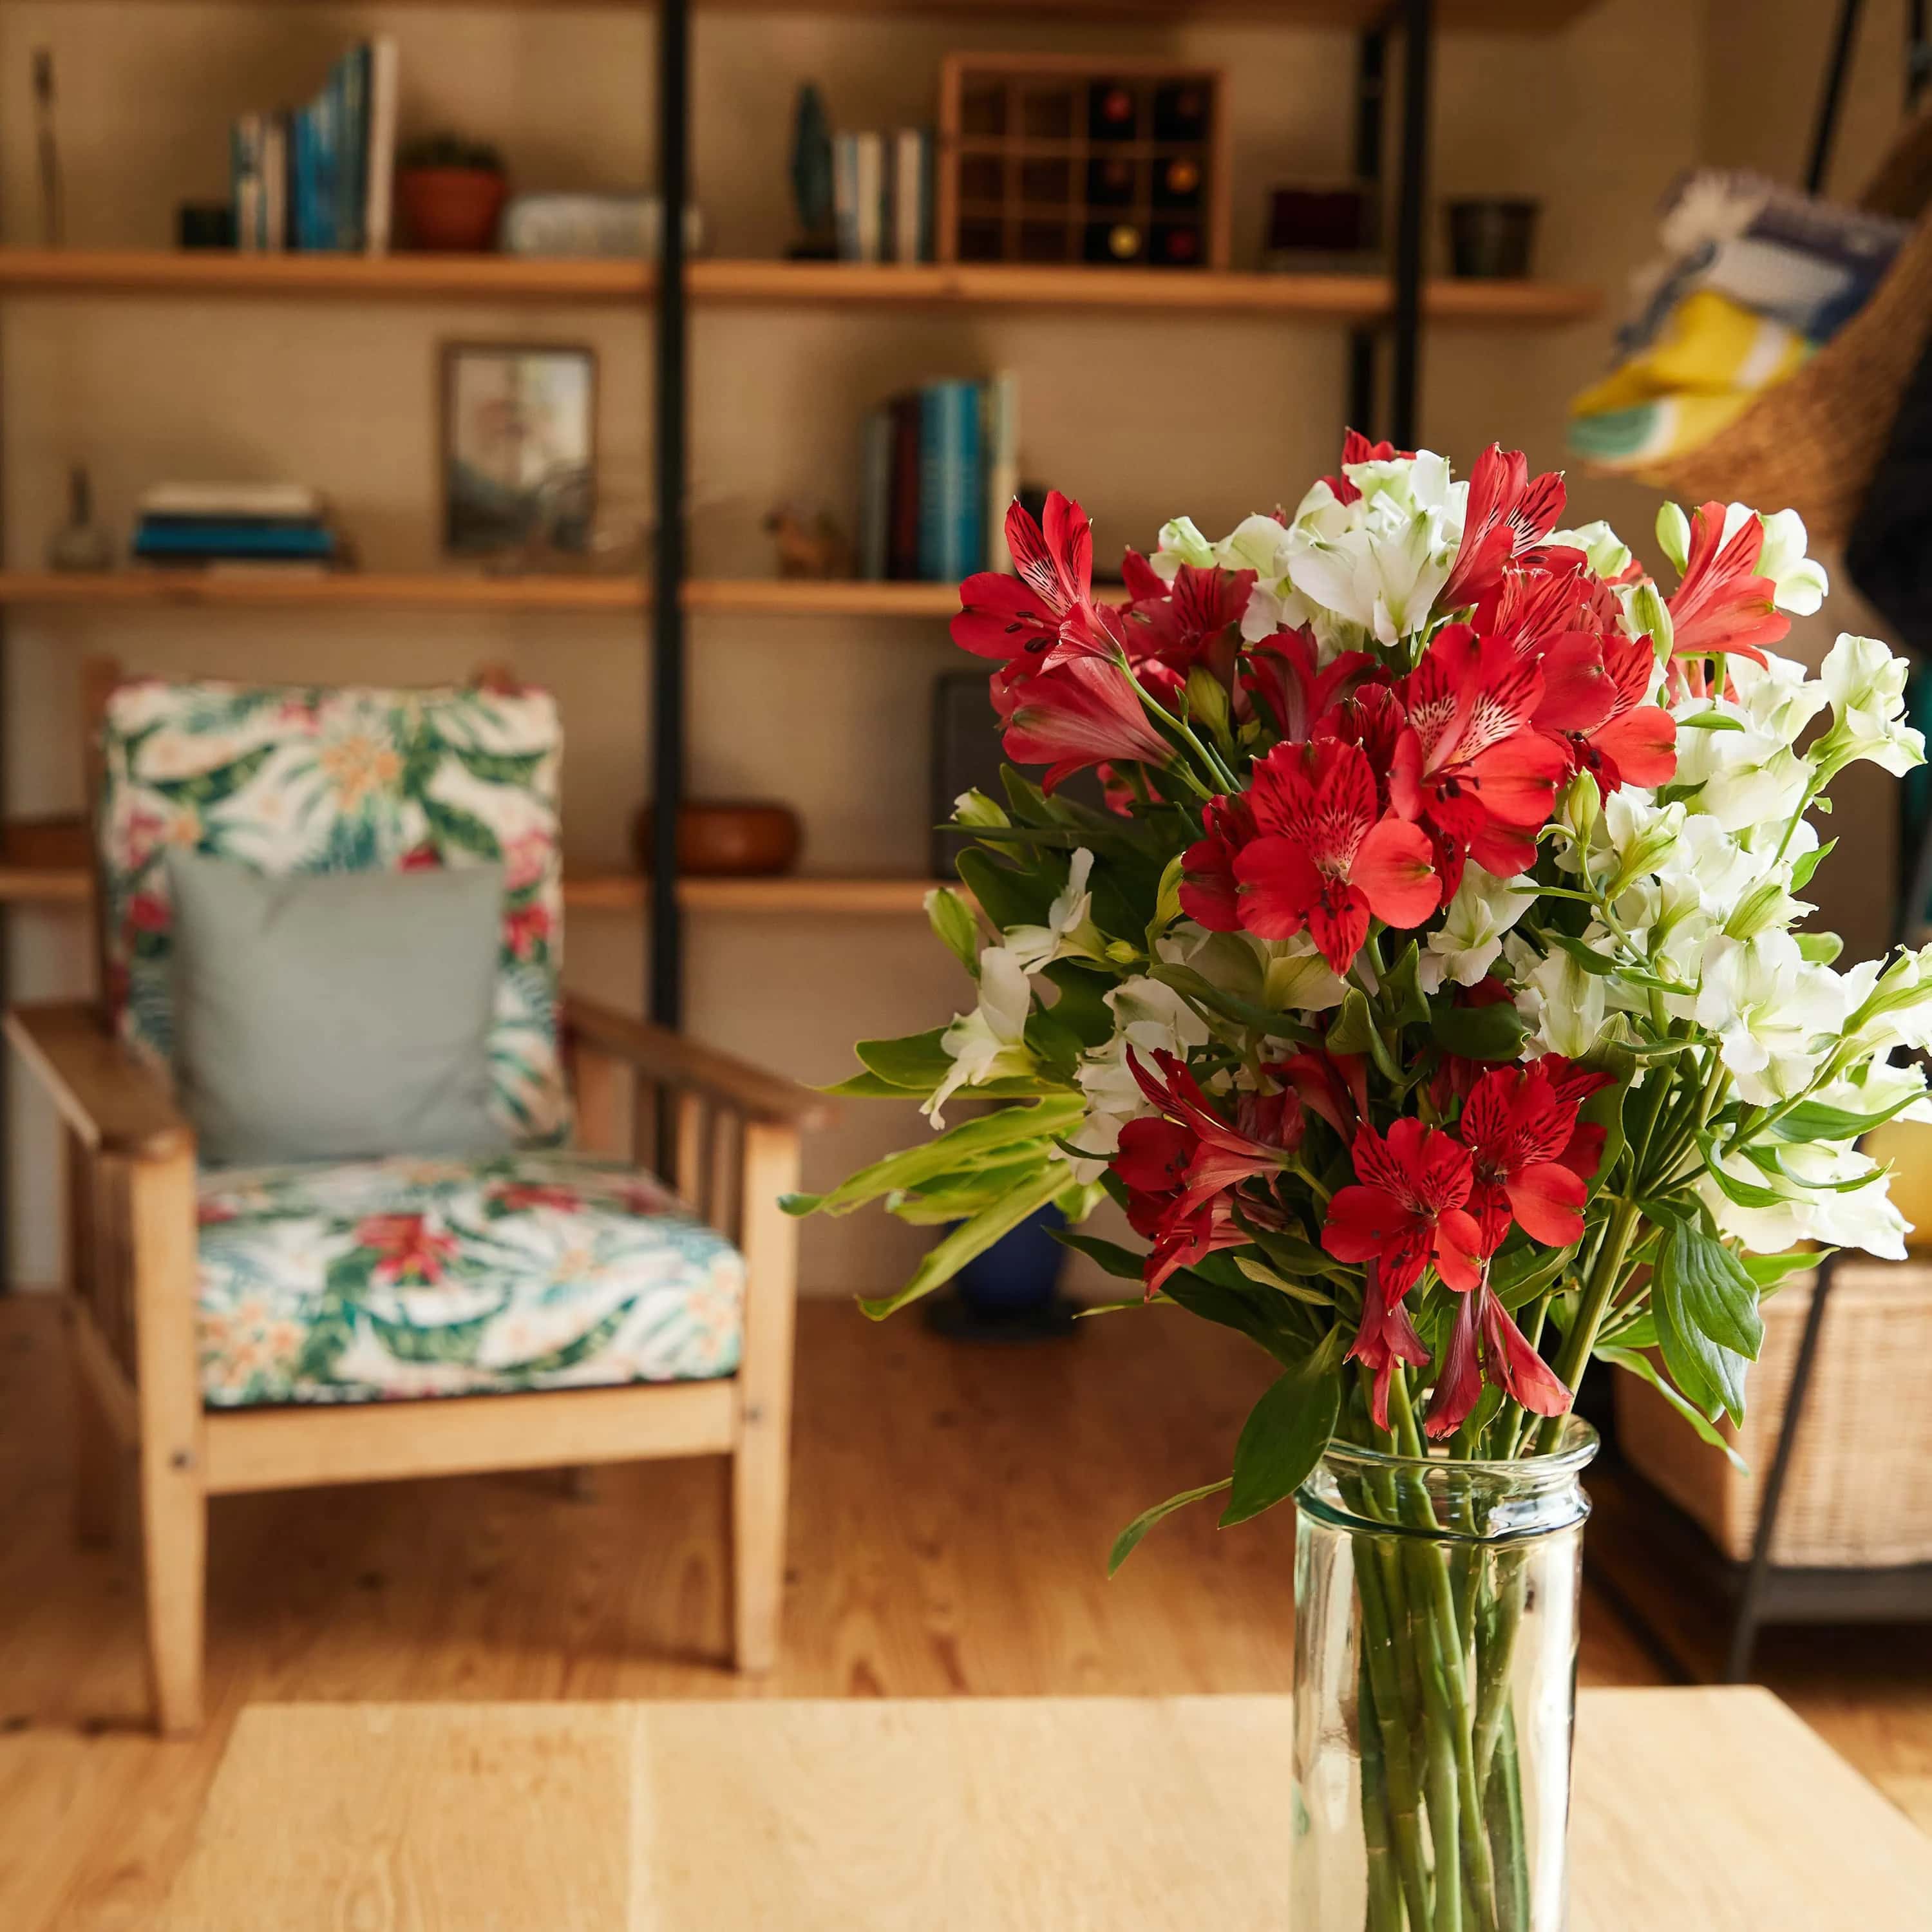 Νιώστε την ηρεμιστική επίδραση των φυτών και λουλουδιών στην καρδιά του σπιτιού ή του γραφείου σας.